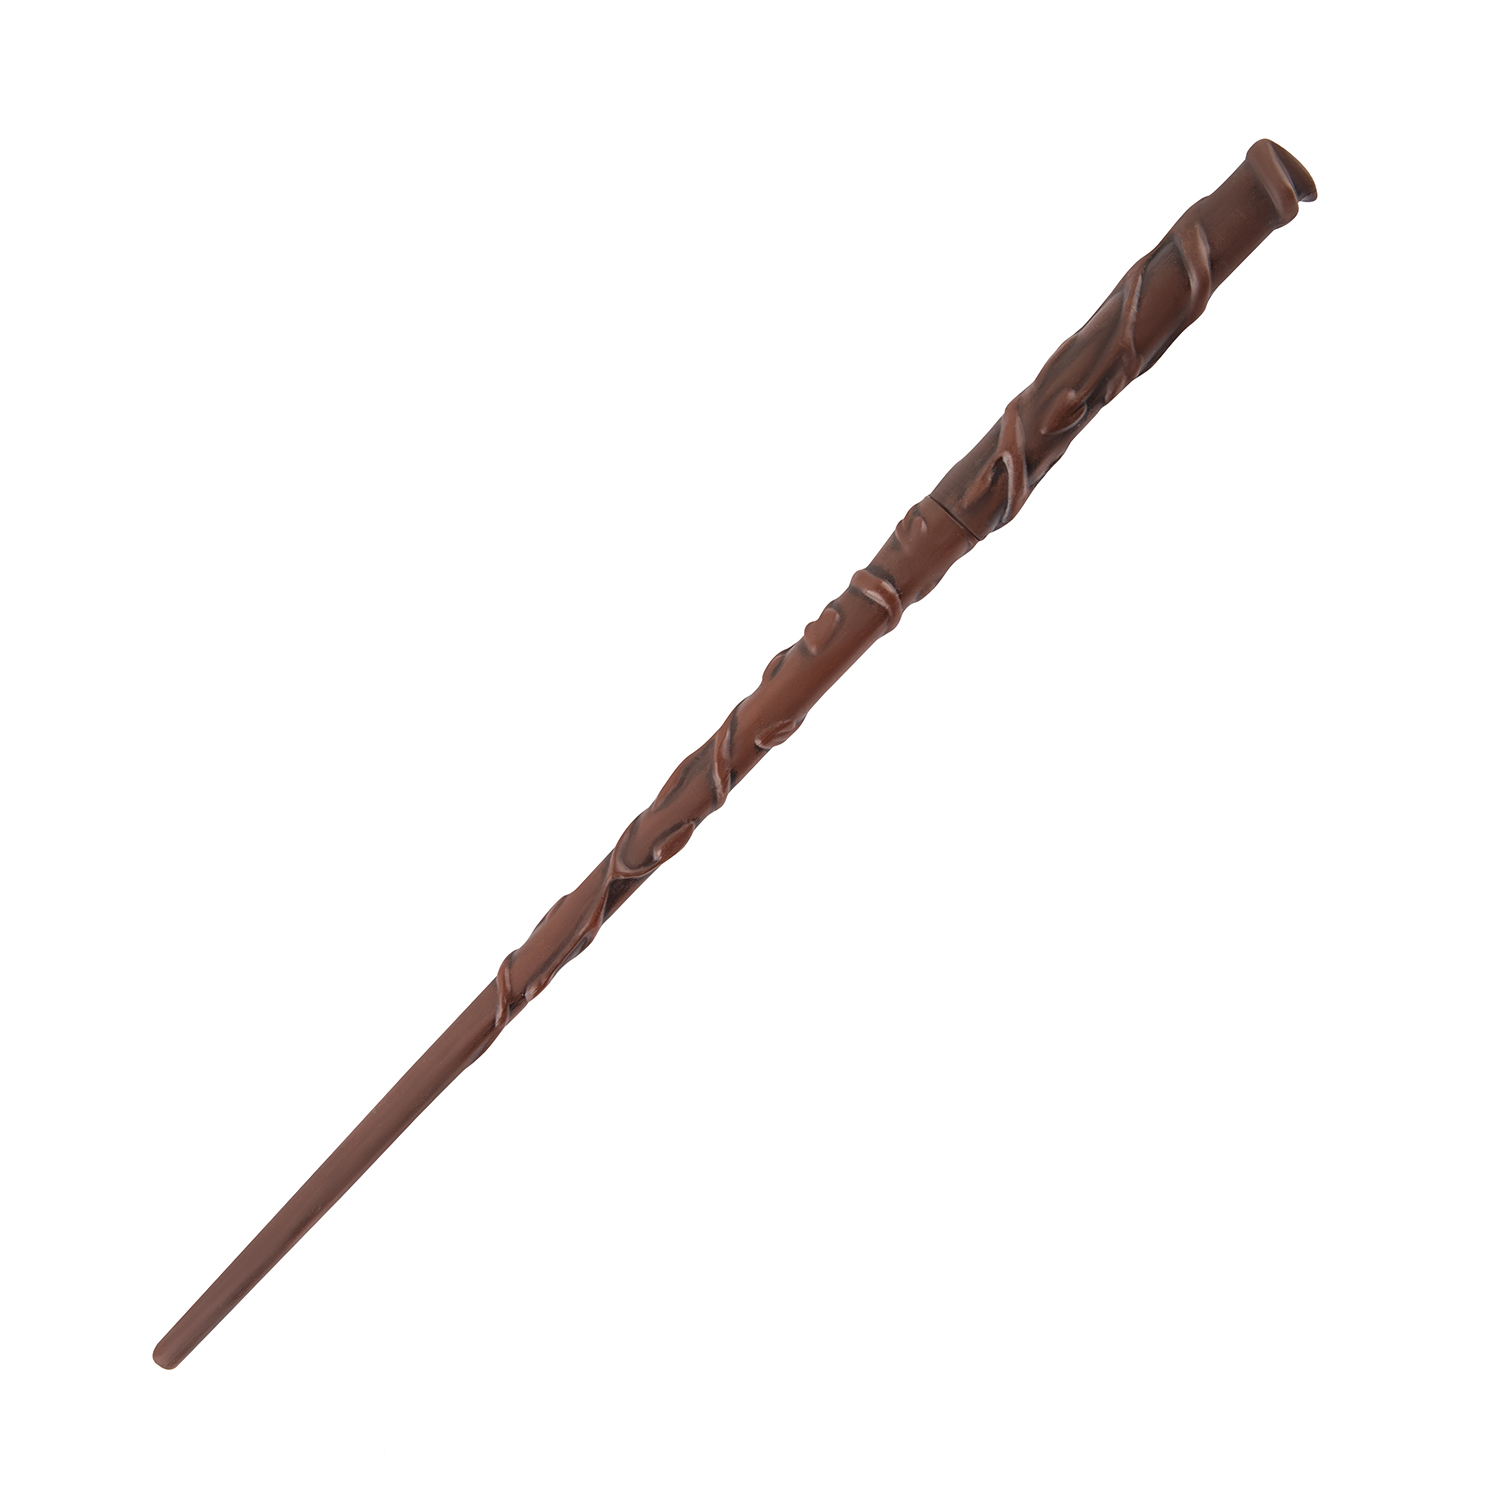 Ручка Harry Potter в виде палочки Гермионы Грейнджер 25 см с подставкой и закладкой - фото 4